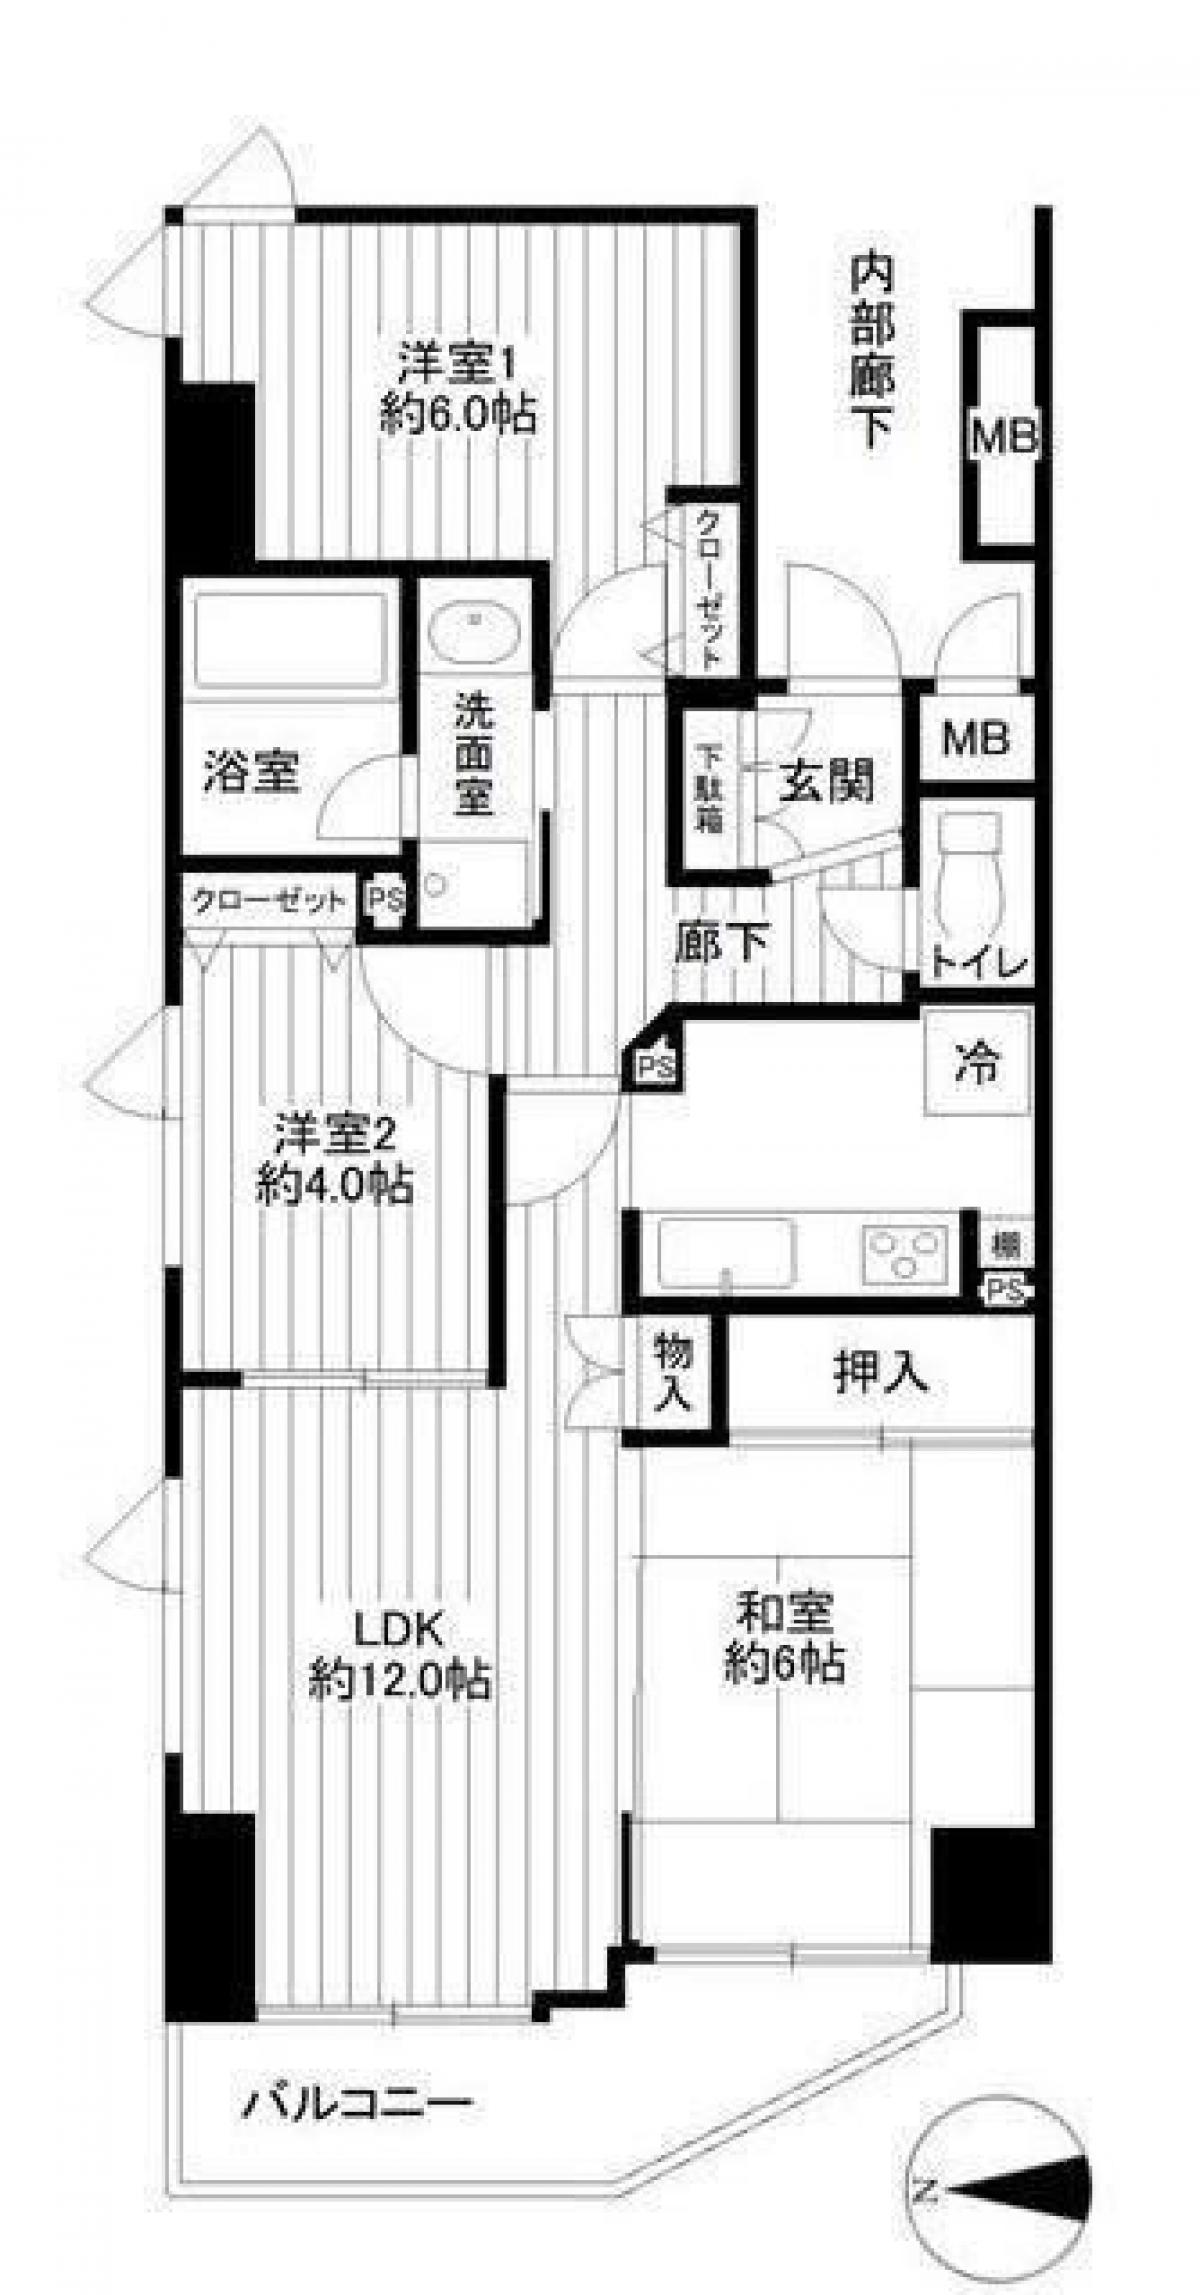 Picture of Apartment For Sale in Kawasaki Shi Saiwai Ku, Kanagawa, Japan